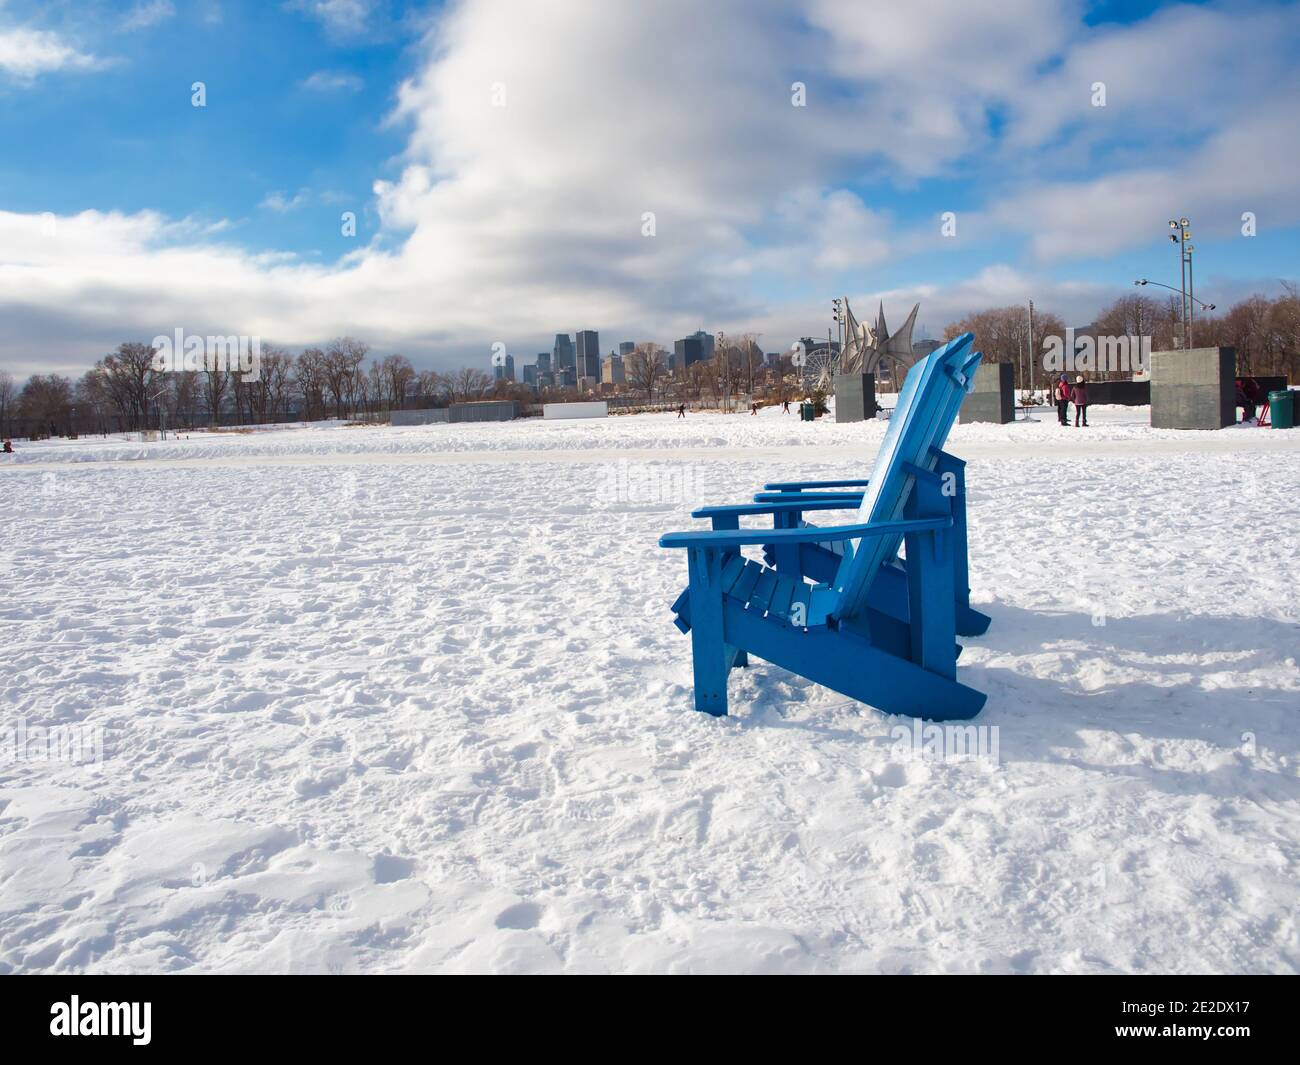 09 gennaio 2021 - Montreal, Canada sedie all'aperto nella neve al Park Jean-Drapeau in inverno con gli edifici di Montreal sullo sfondo Foto Stock